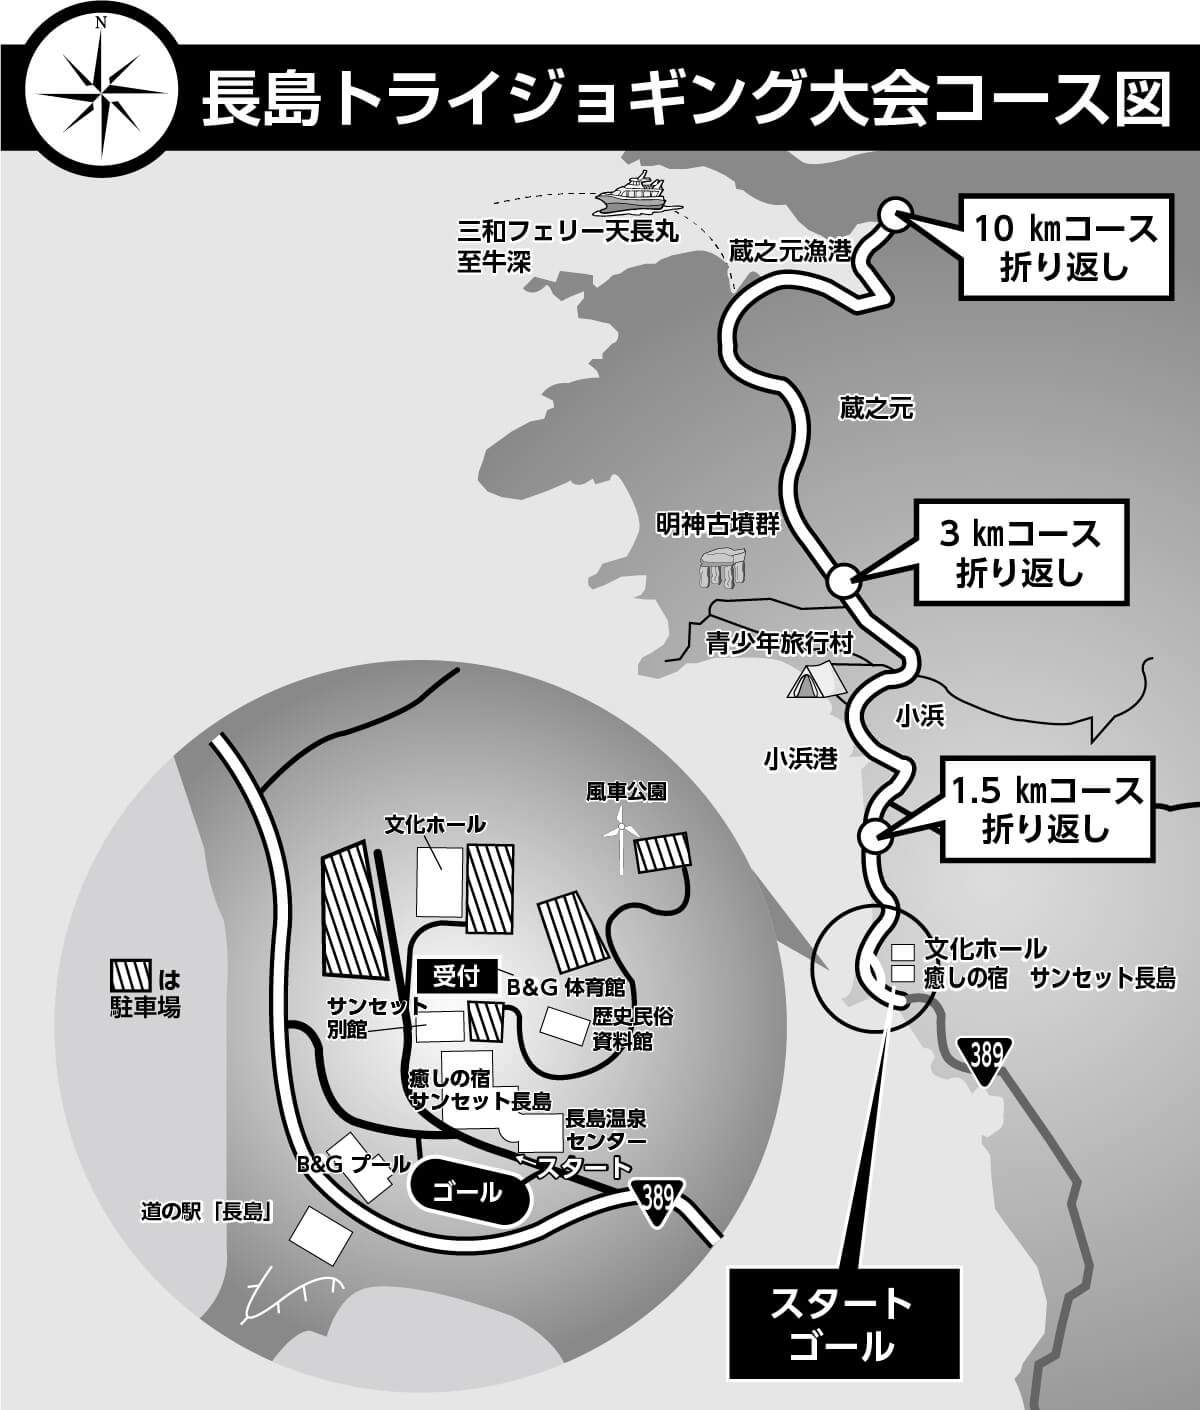 長島トライジョギング大会コースマップ